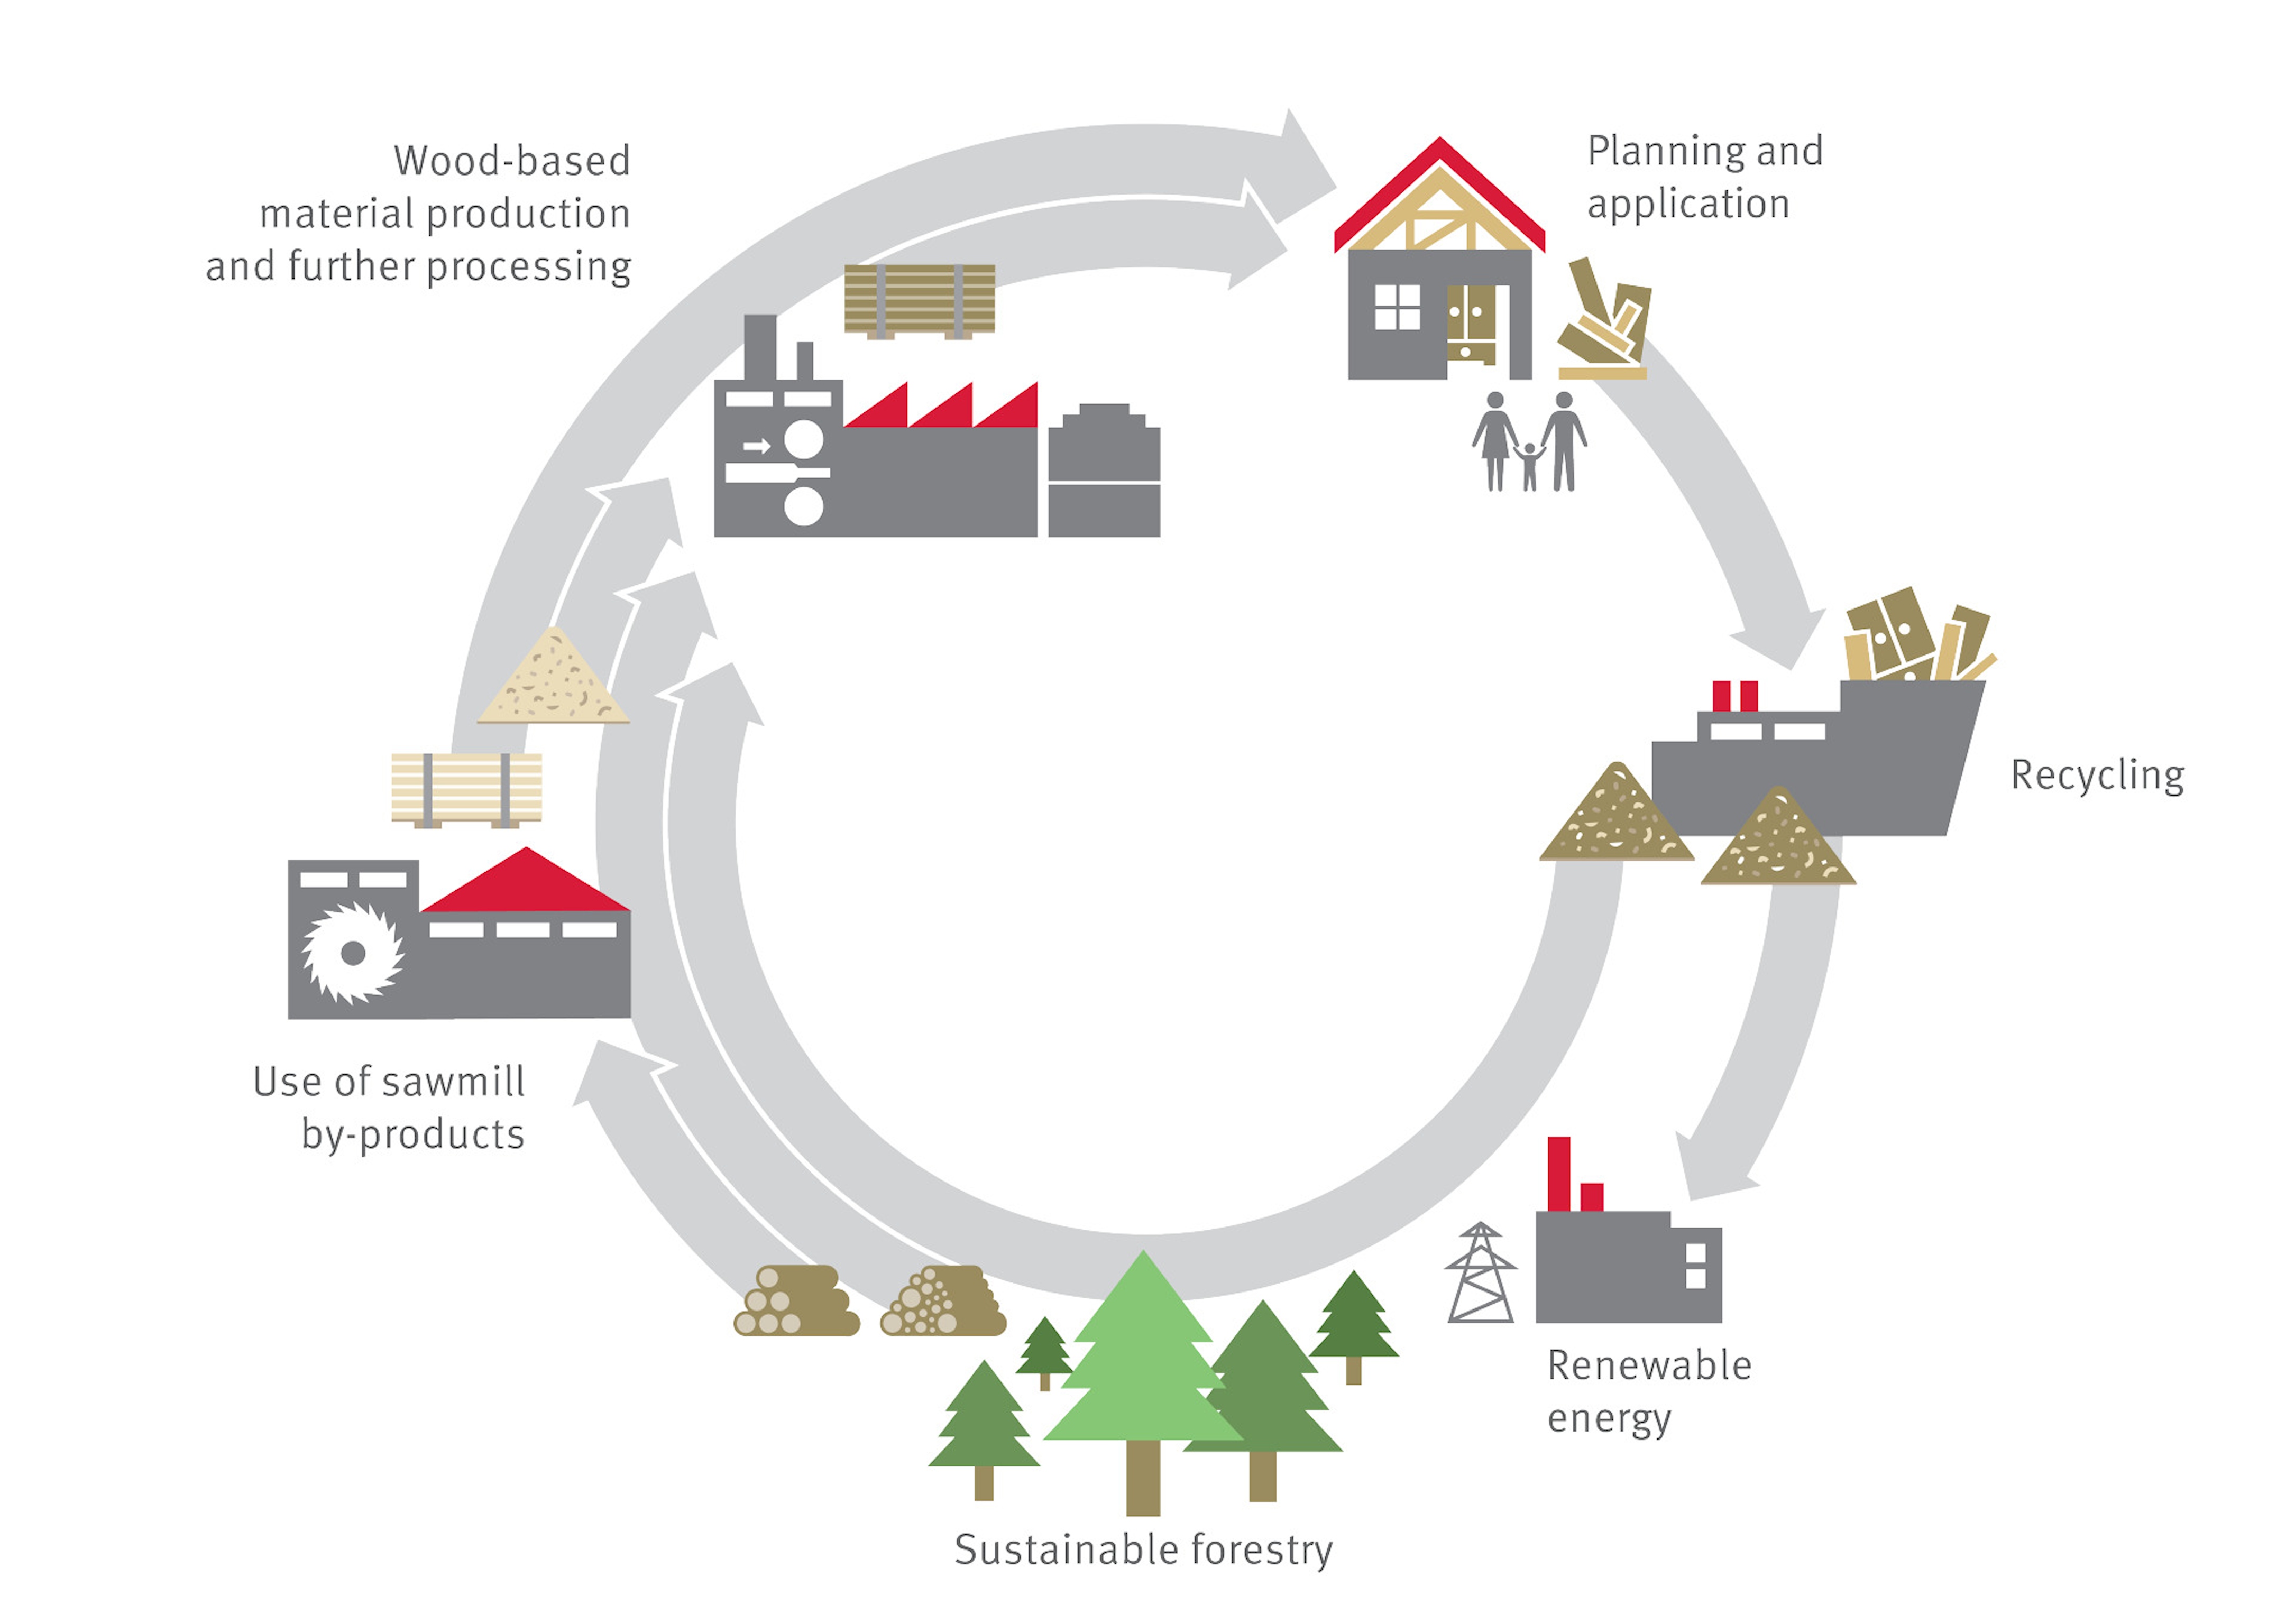 O nosso ciclo ambiental - Da árvore ao produto: um ciclo fechado.